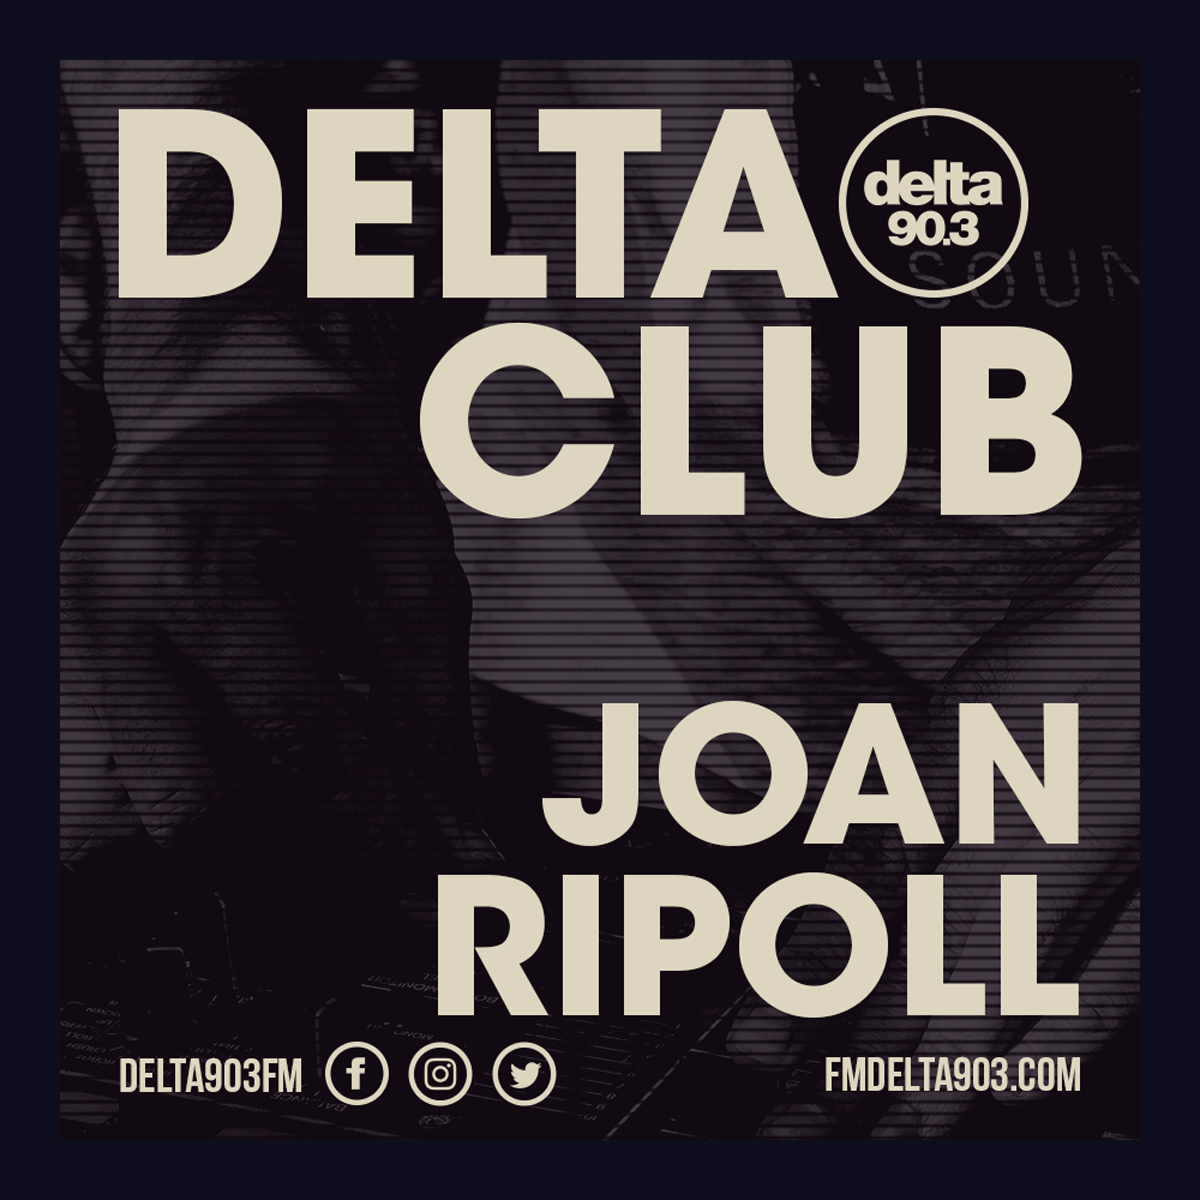 Delta Podcasts - Delta Club presents Joan Ripoll (25.04.2018)